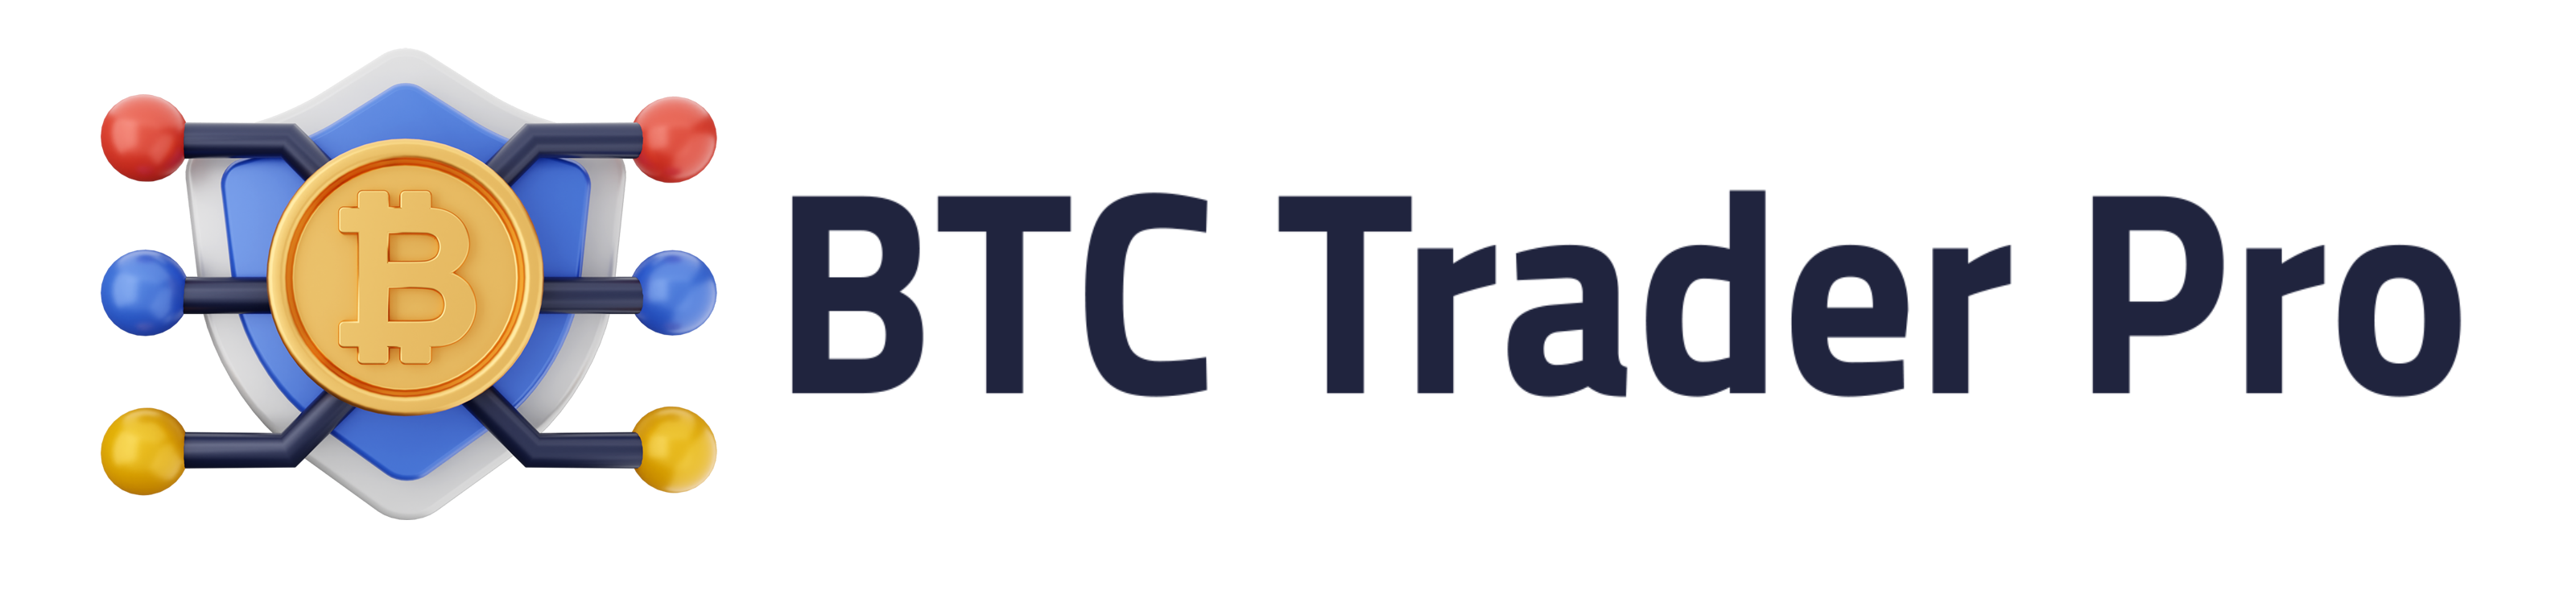 BTC Trader Pro